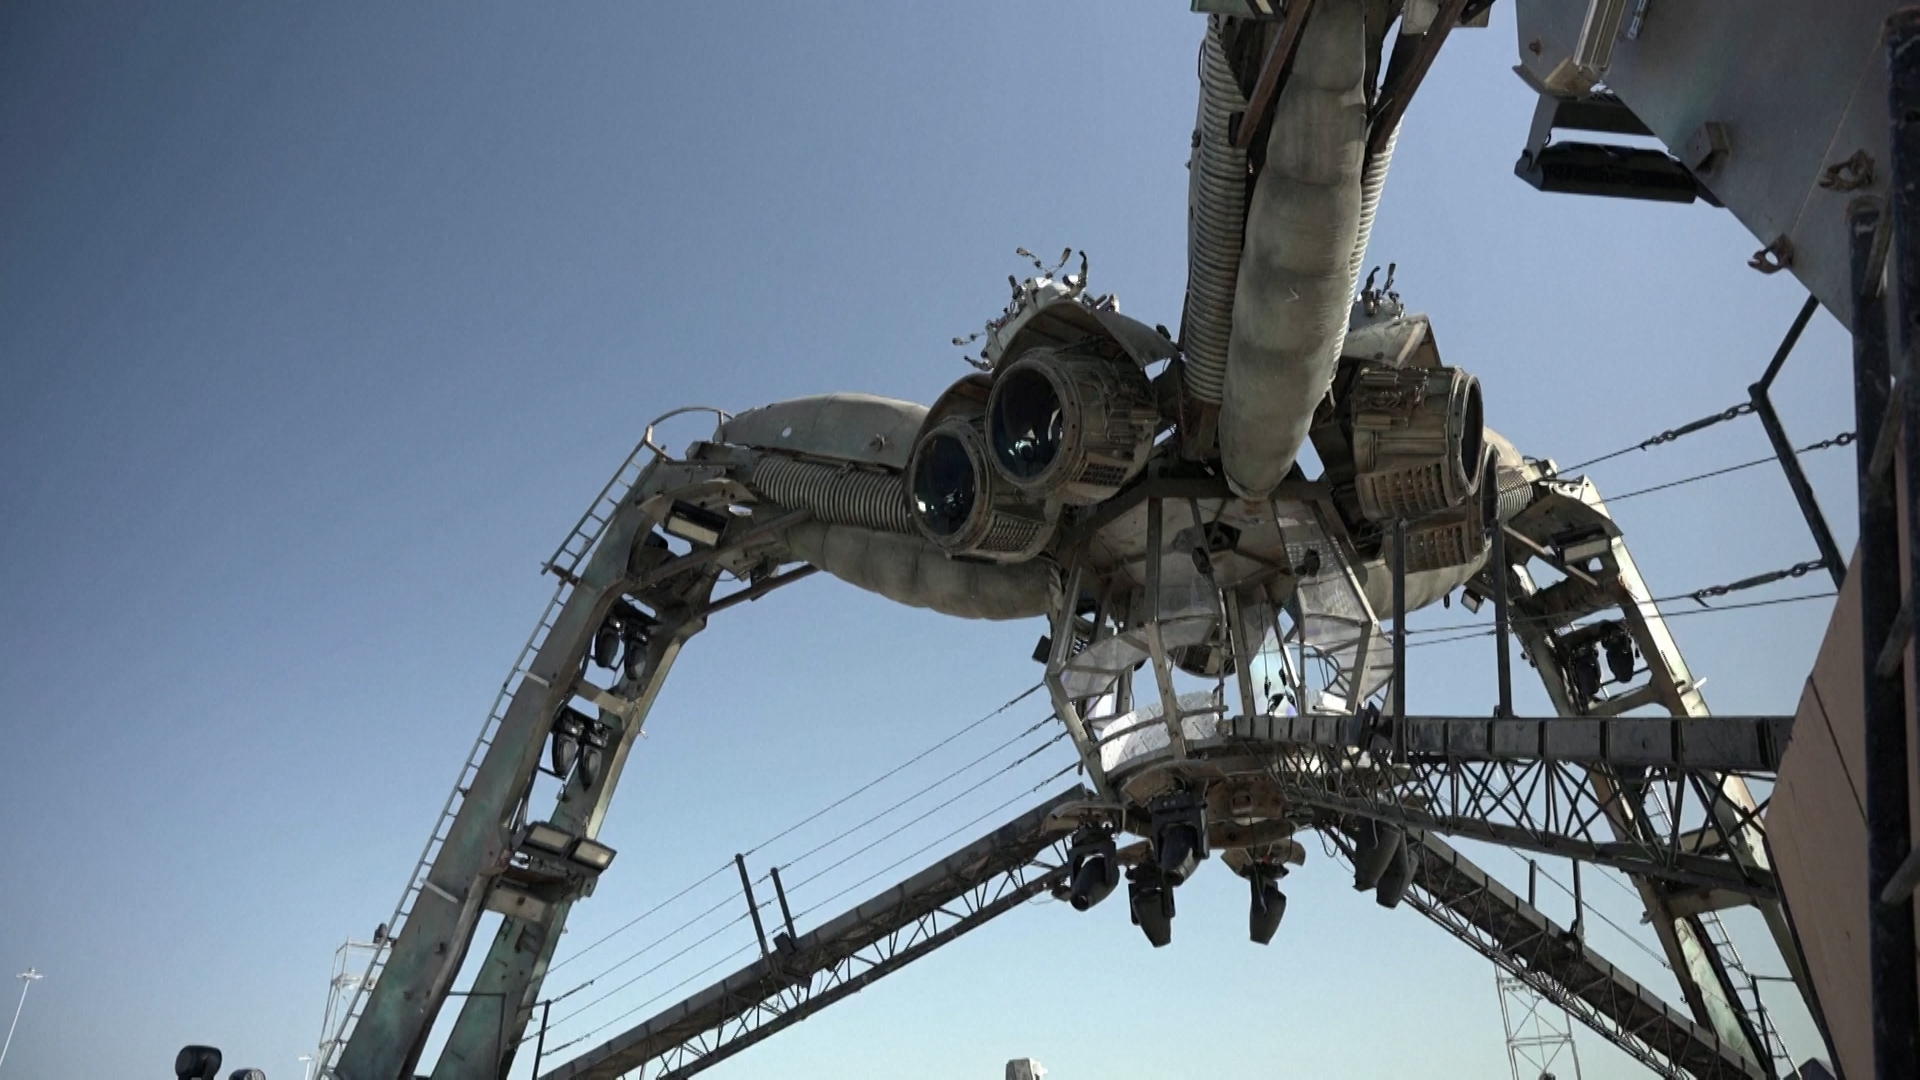 Μουντιάλ του Κατάρ: Η τεράστια μηχανική αράχνη και άλλα αξιοθέατα στο πλαίσιο της ψυχαγωγίας του Παγκοσμίου Κυπέλλου (video)